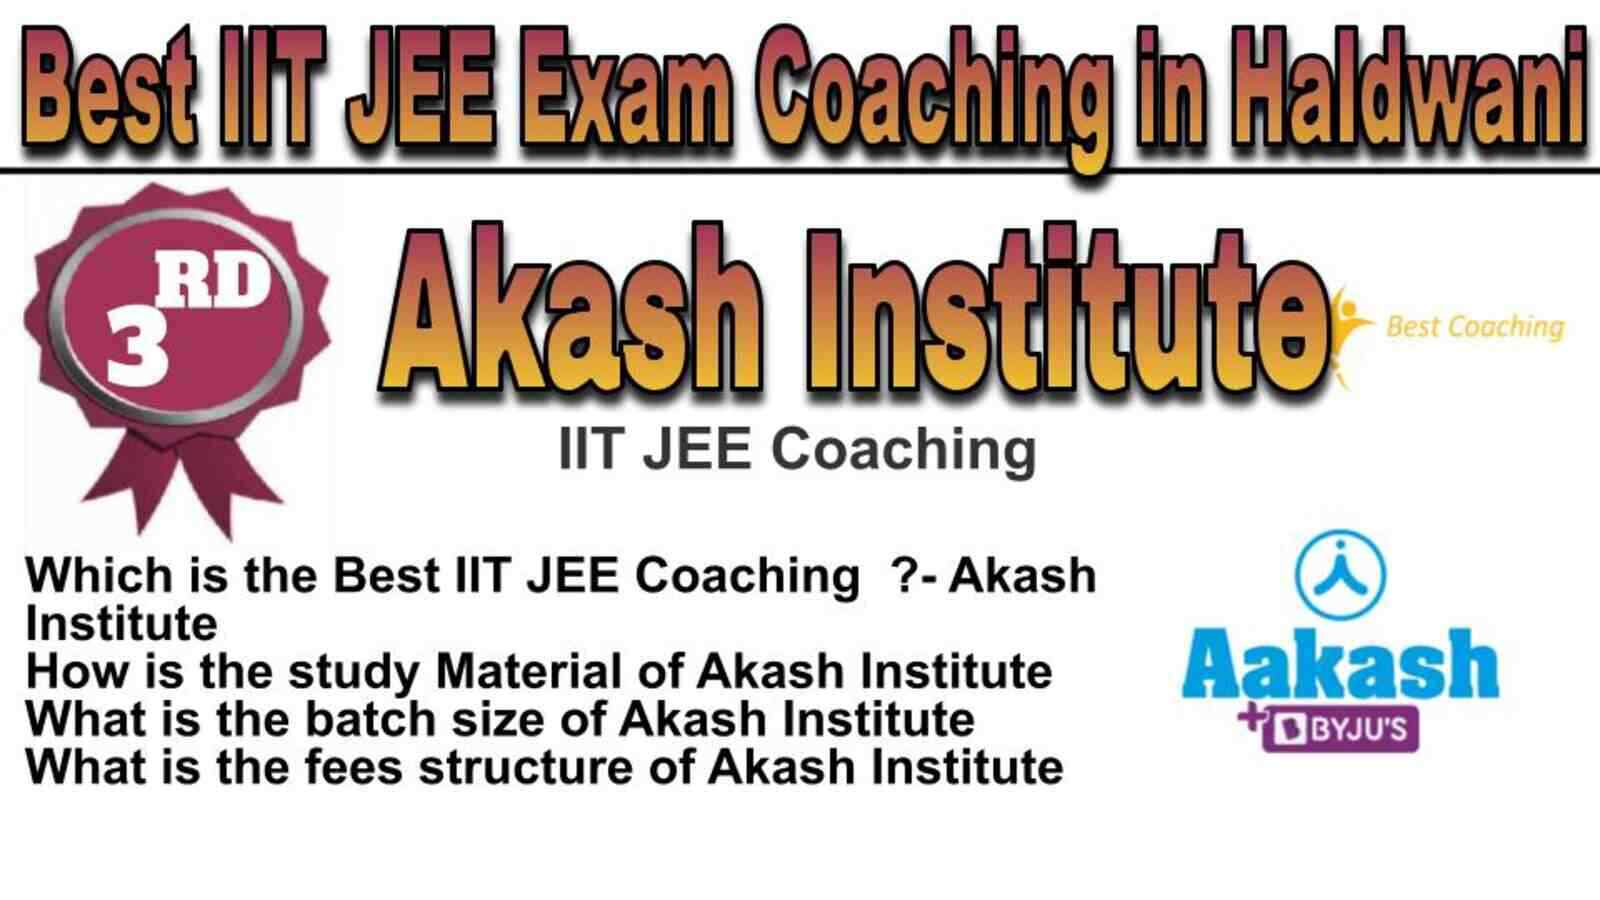 Rank 3 Best IIT JEE Coaching in Haldwani